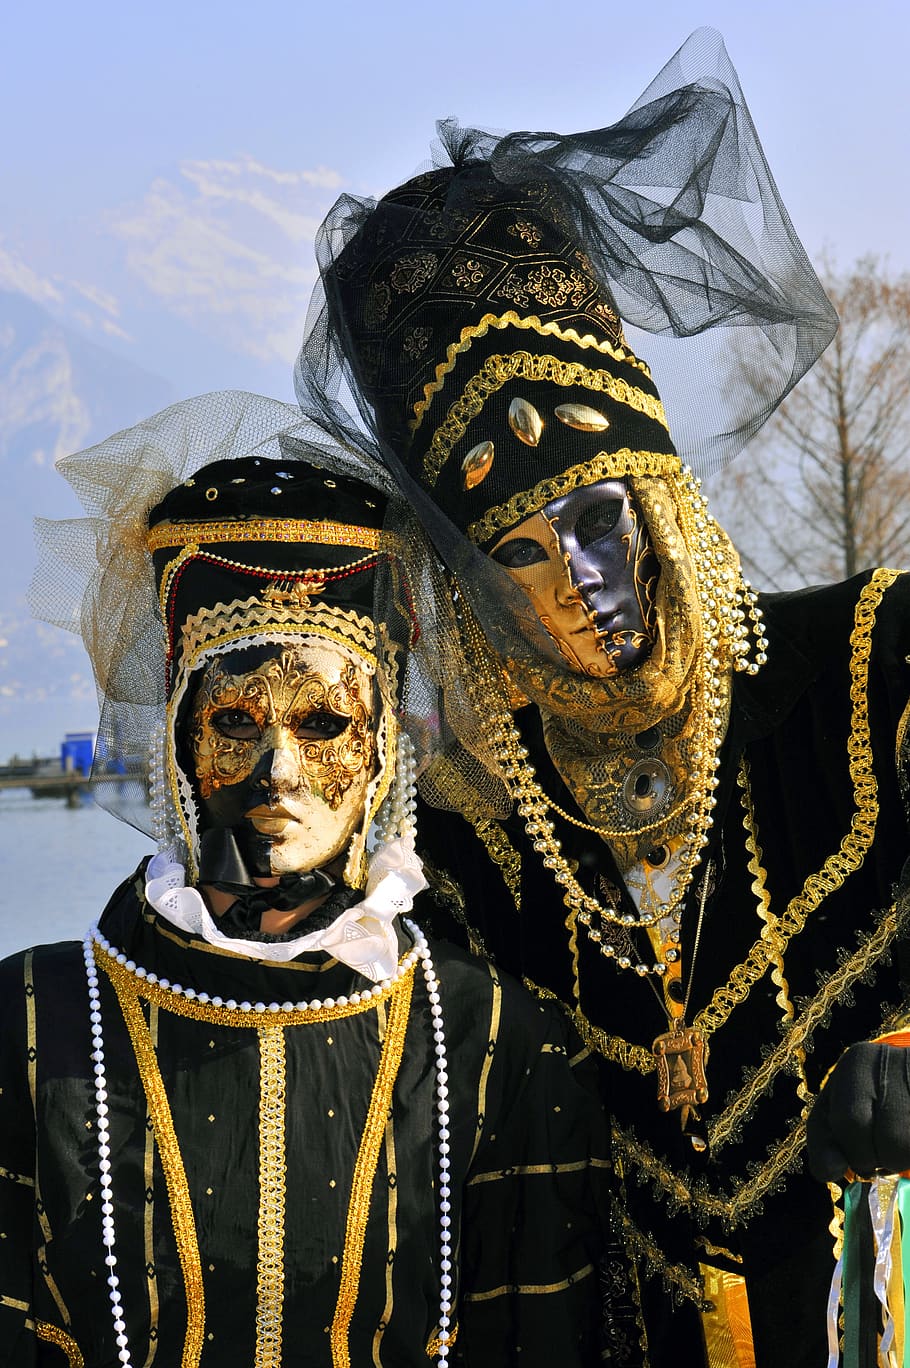 carnaval, venecia, mascara, veneciano, representación humana, representación, arte y artesanía, creatividad, celebración, vestuario